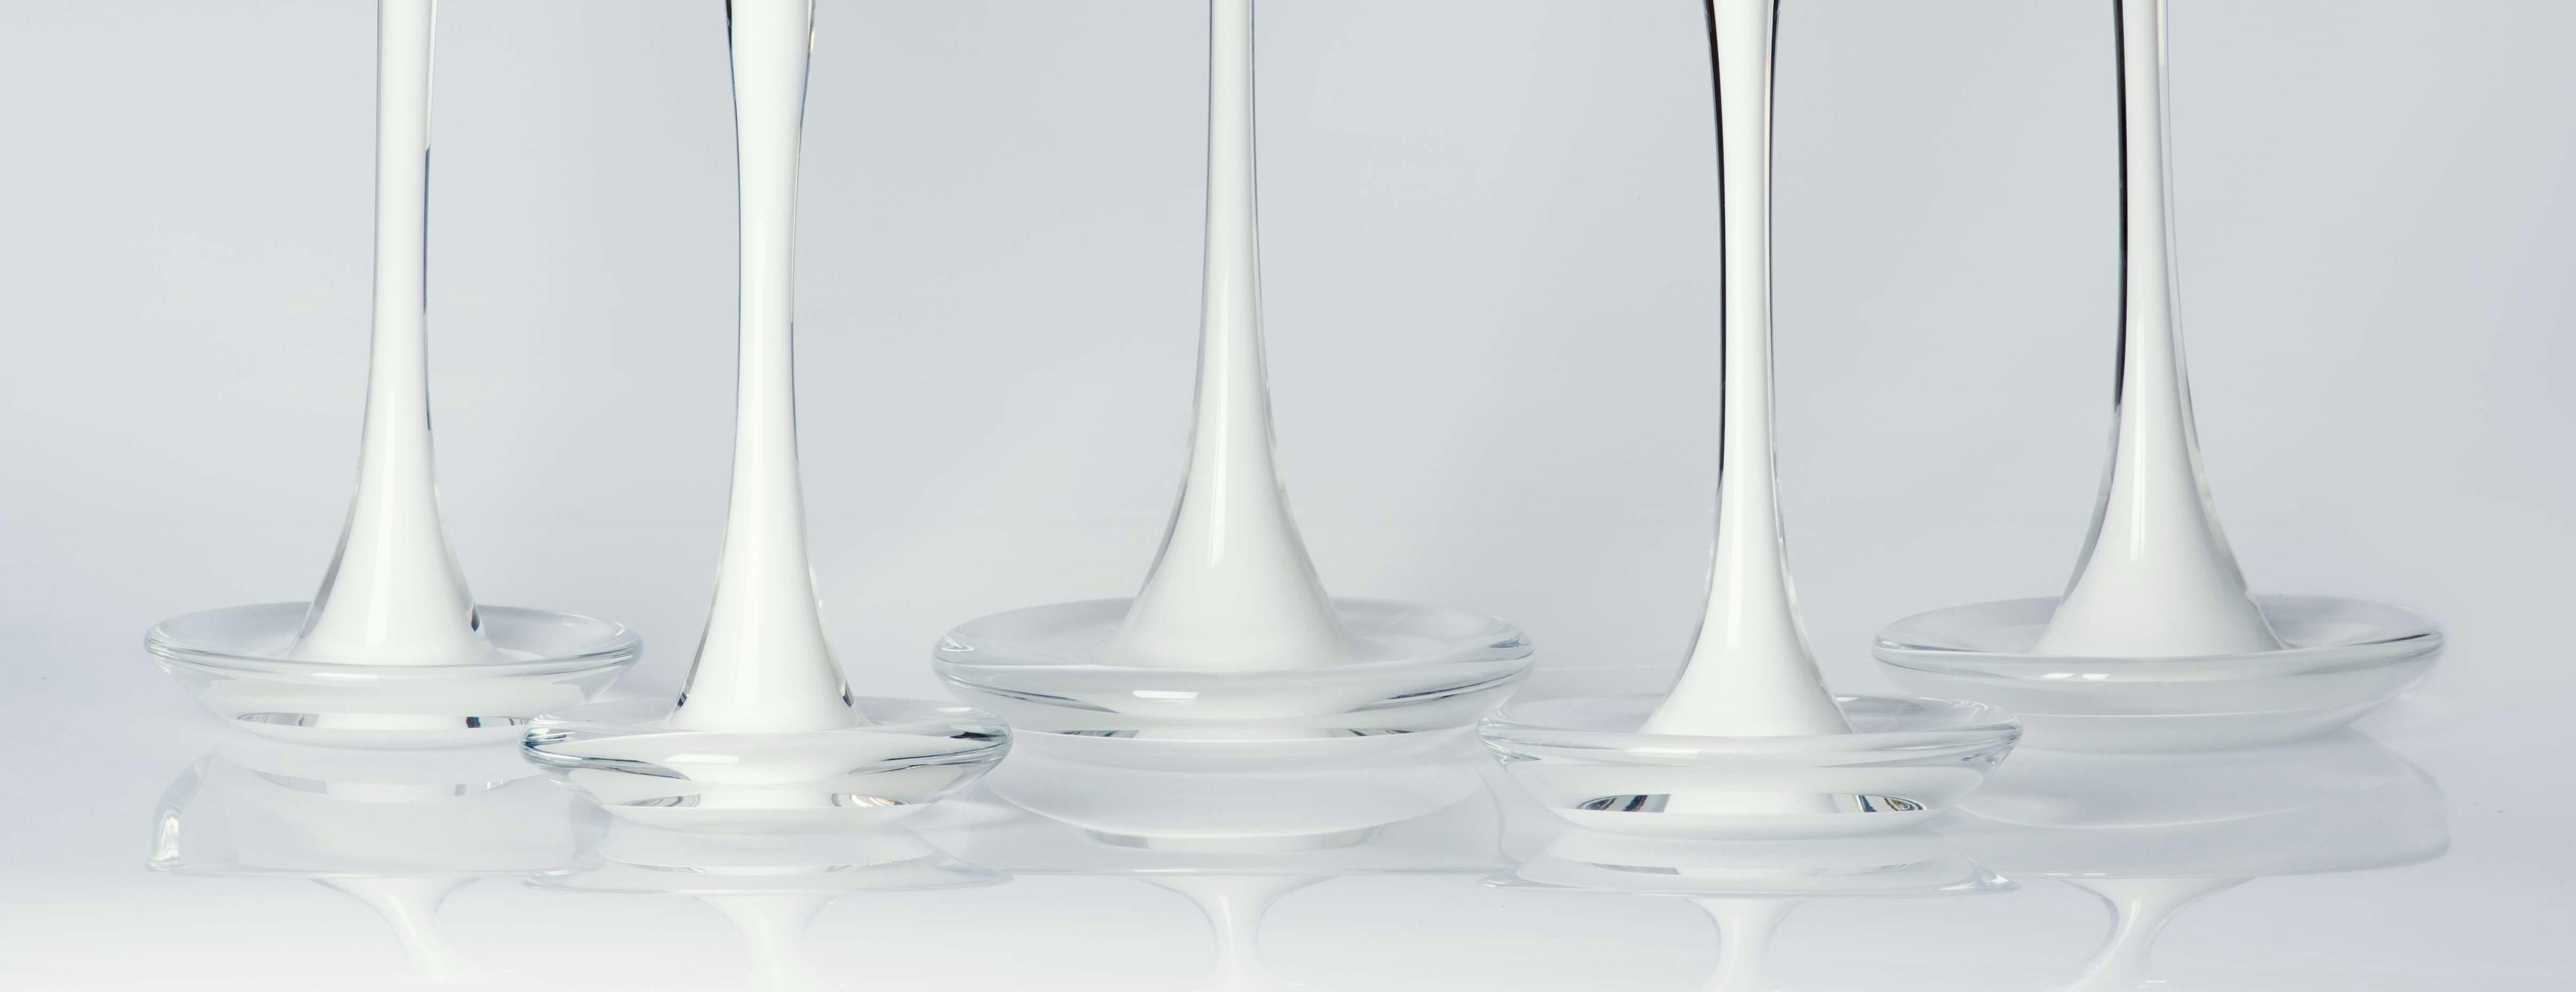 Modern Moshe Bursuker Set of 5 White Glass Candleholders, 2019